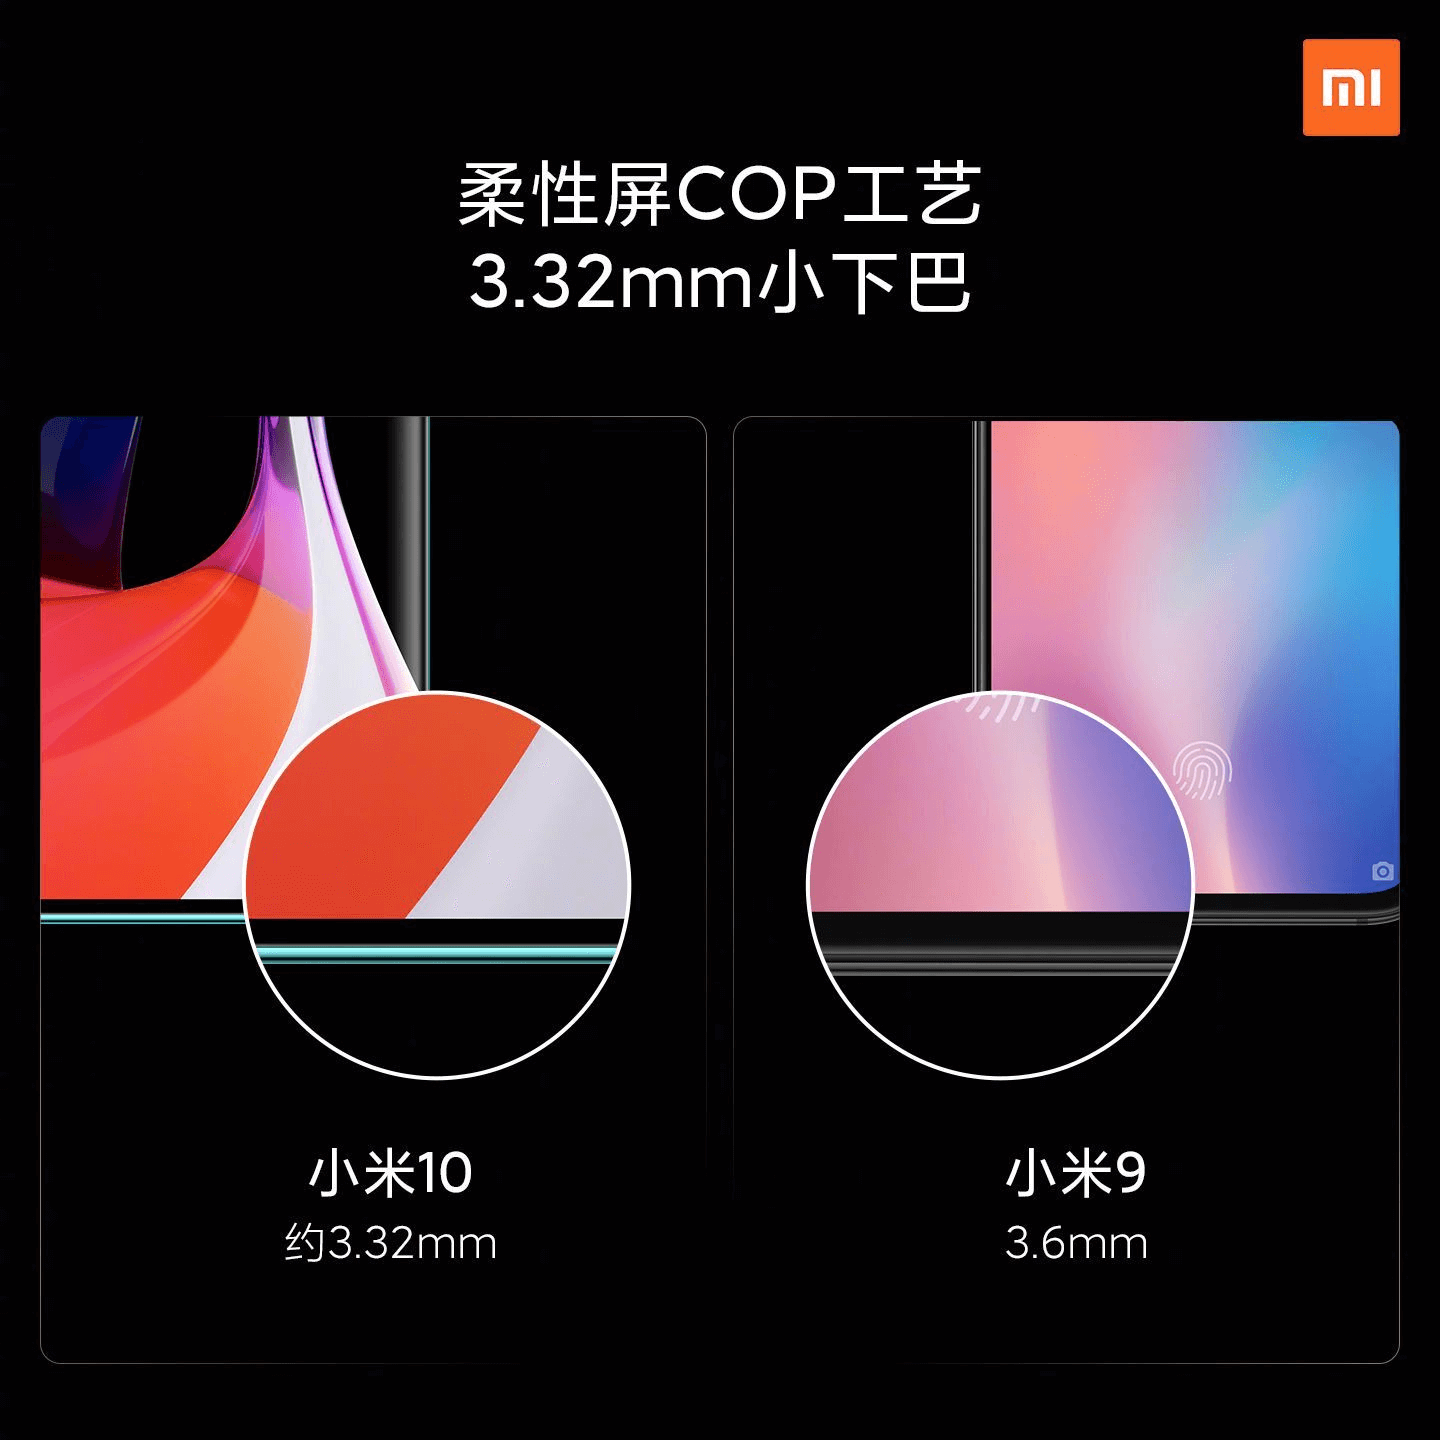 Diferencia Xiaomi Mi 10 vs Xiaomi Mi 9